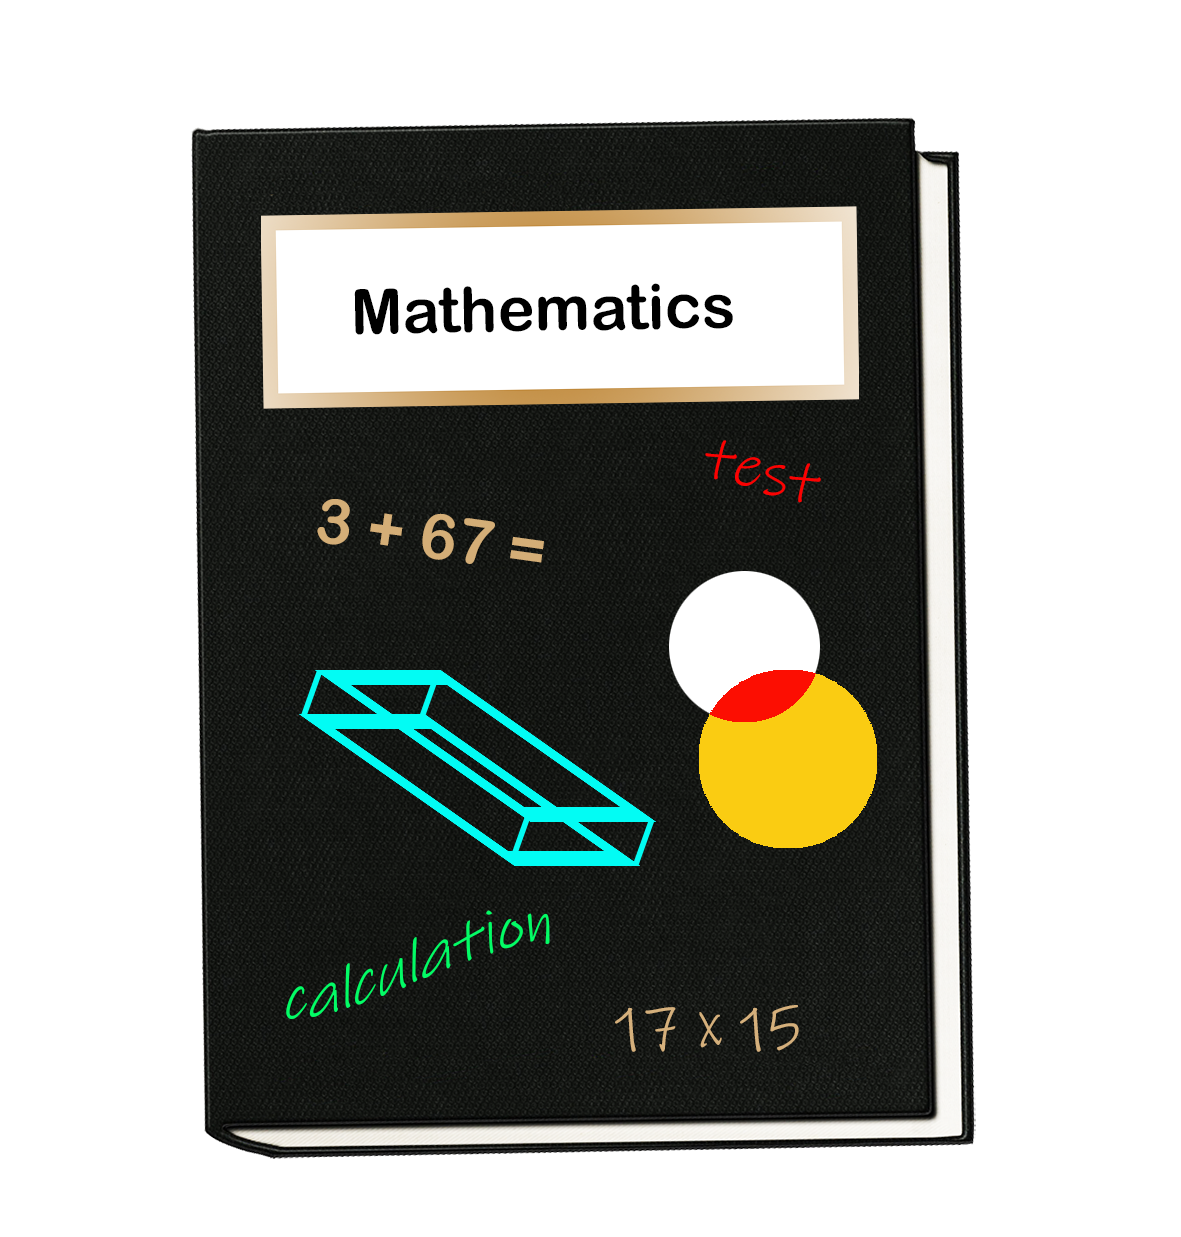 Mathematics book clipart